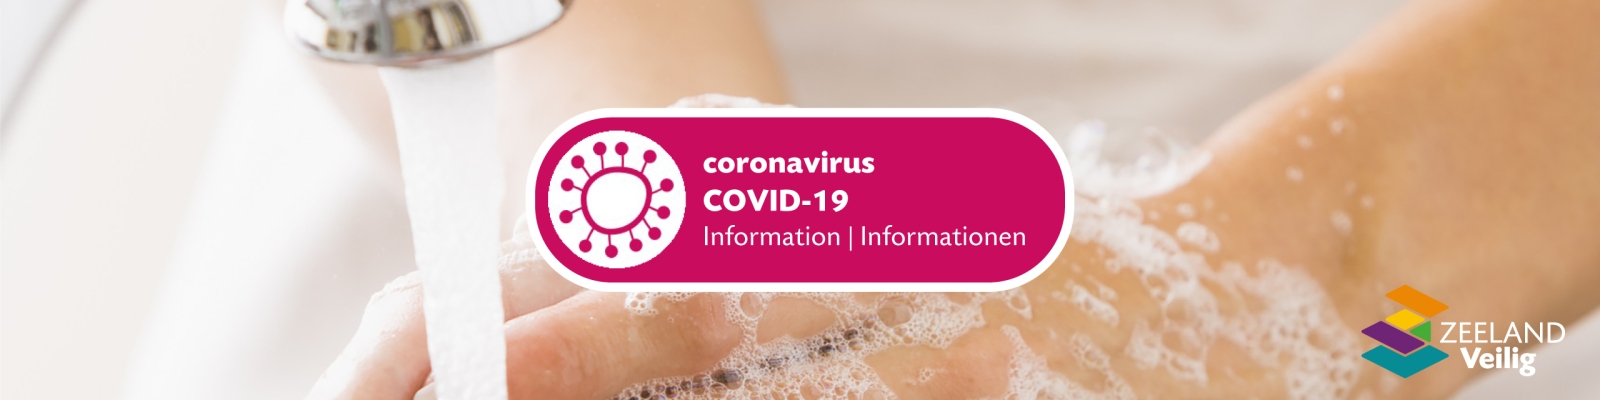 Coronavirus CODVID-19